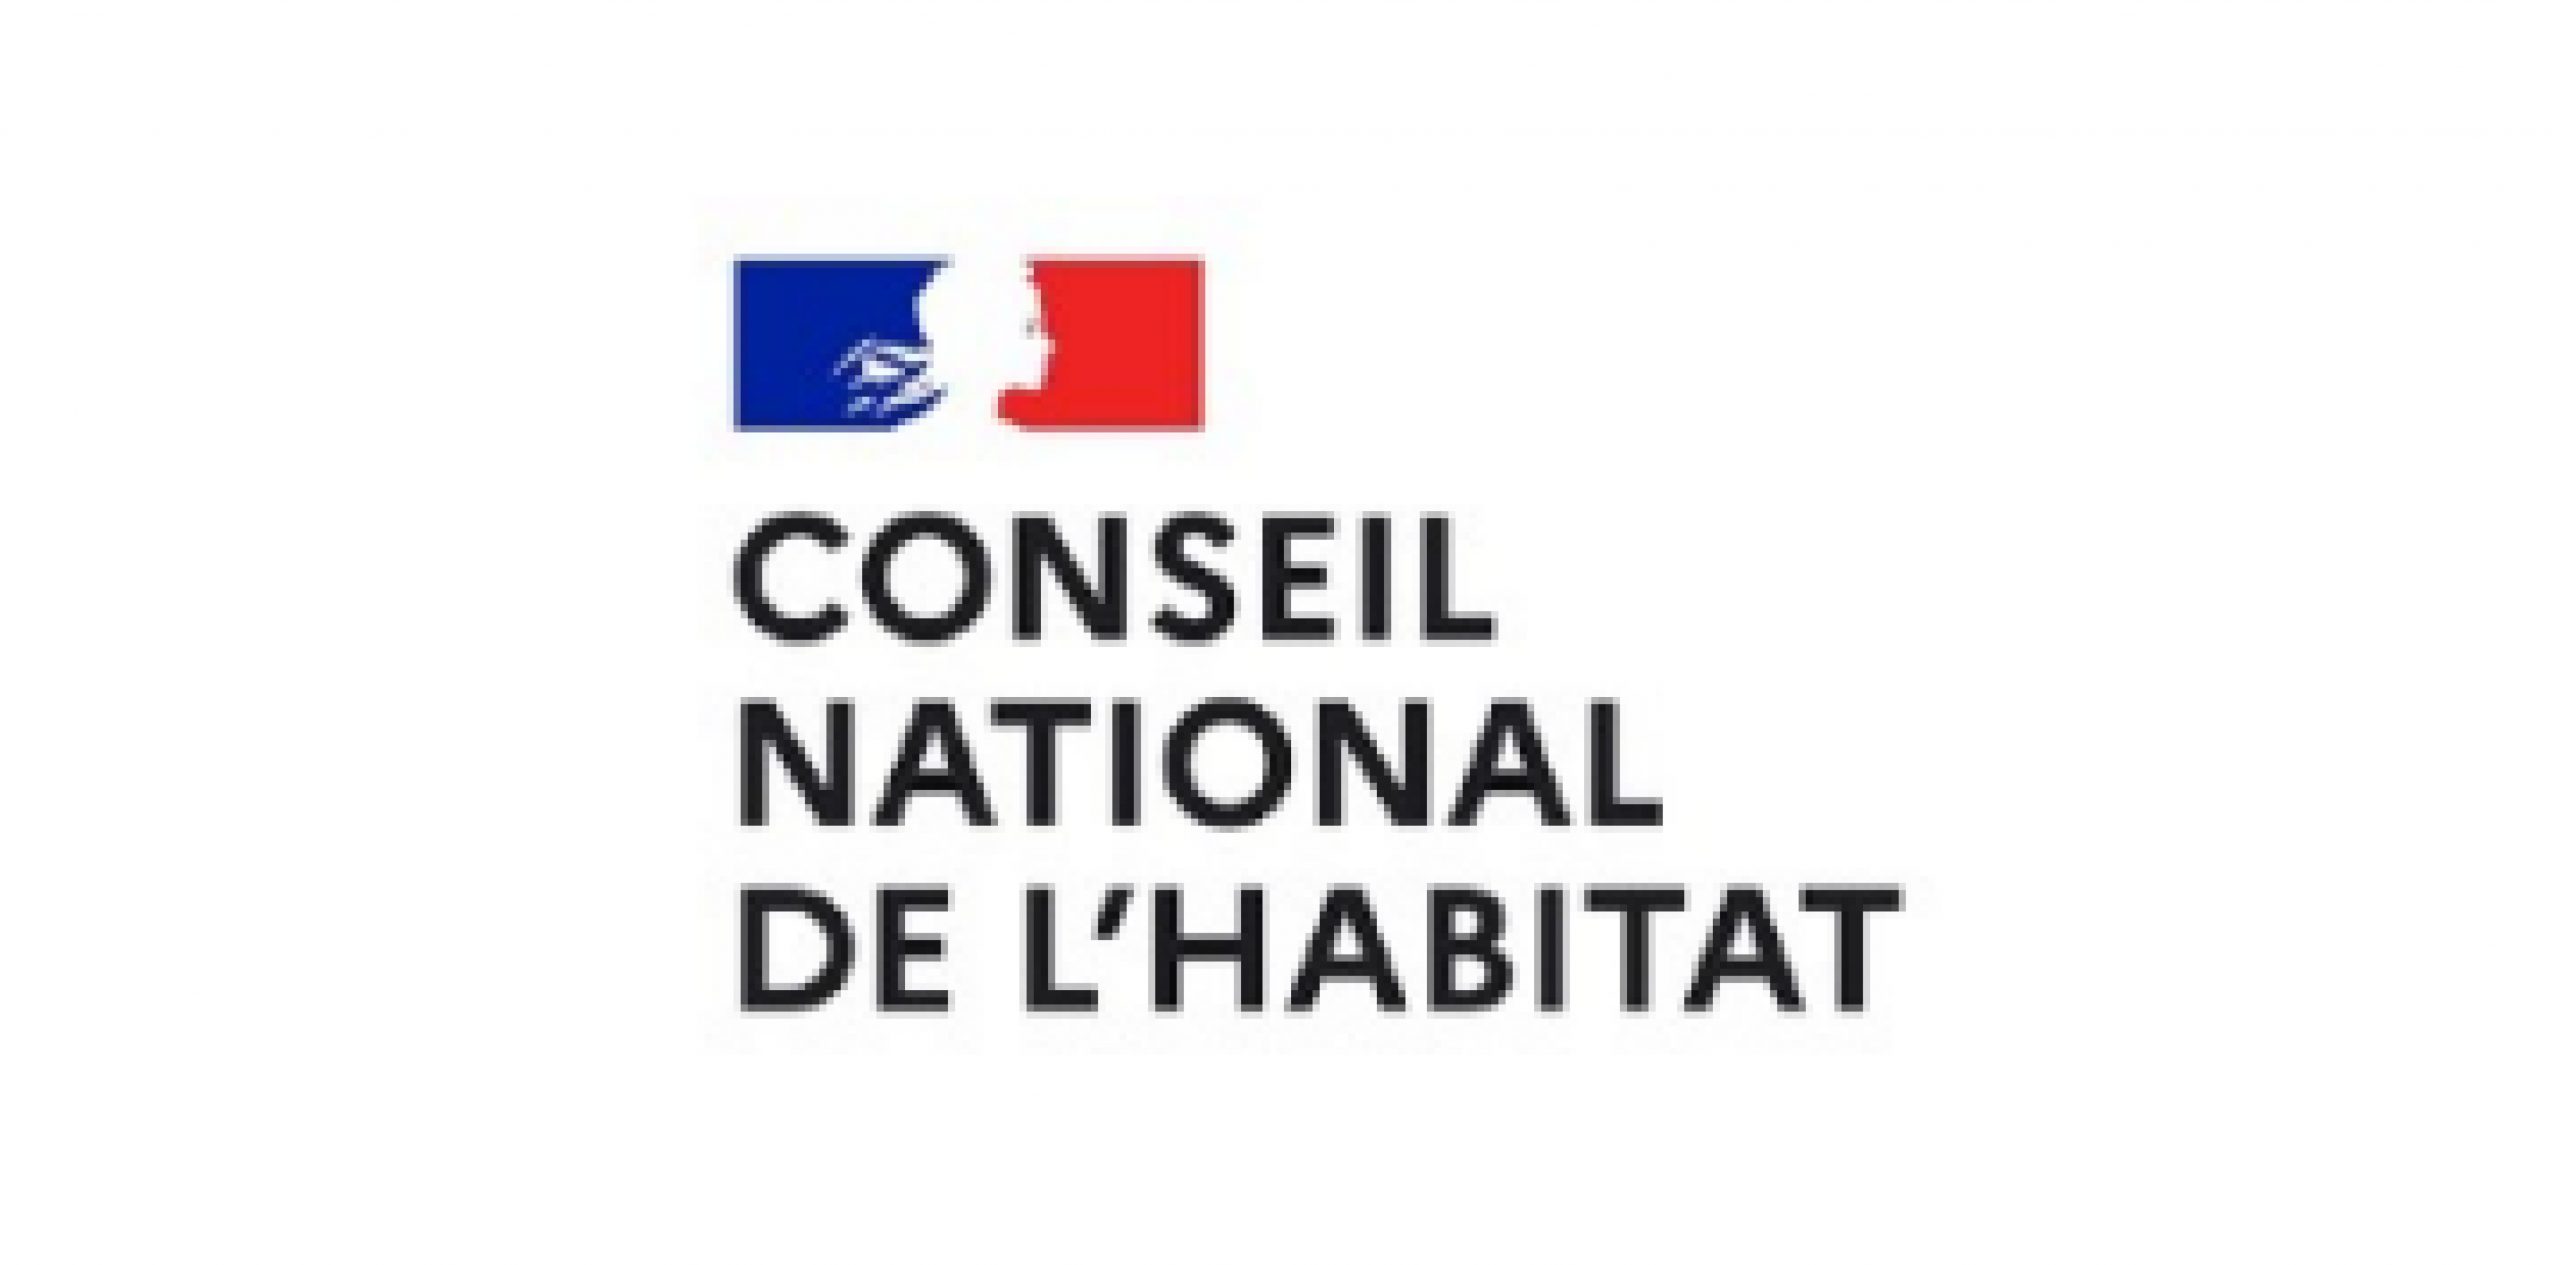 Conseil national de l'habitat CNH